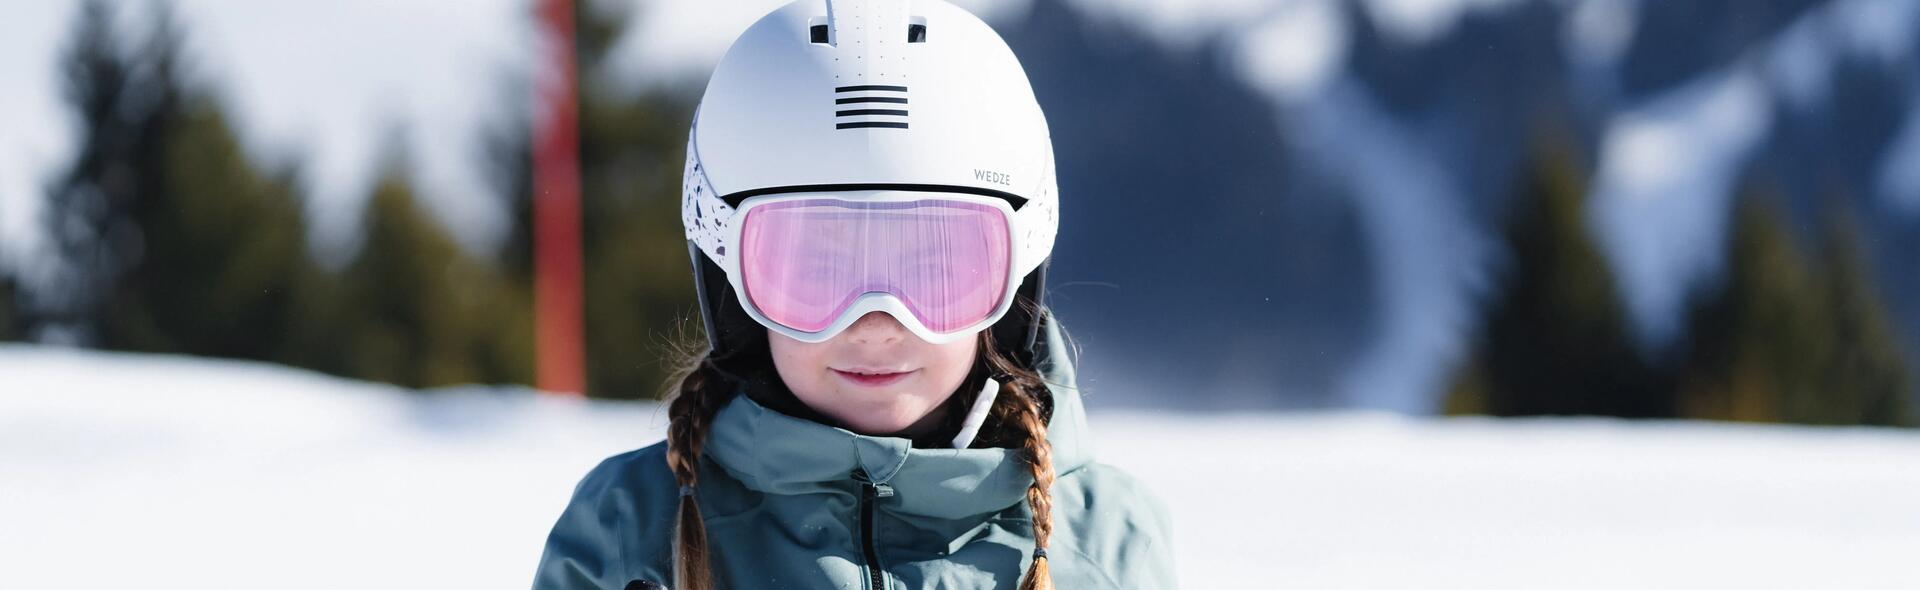 kid skiing with helmet